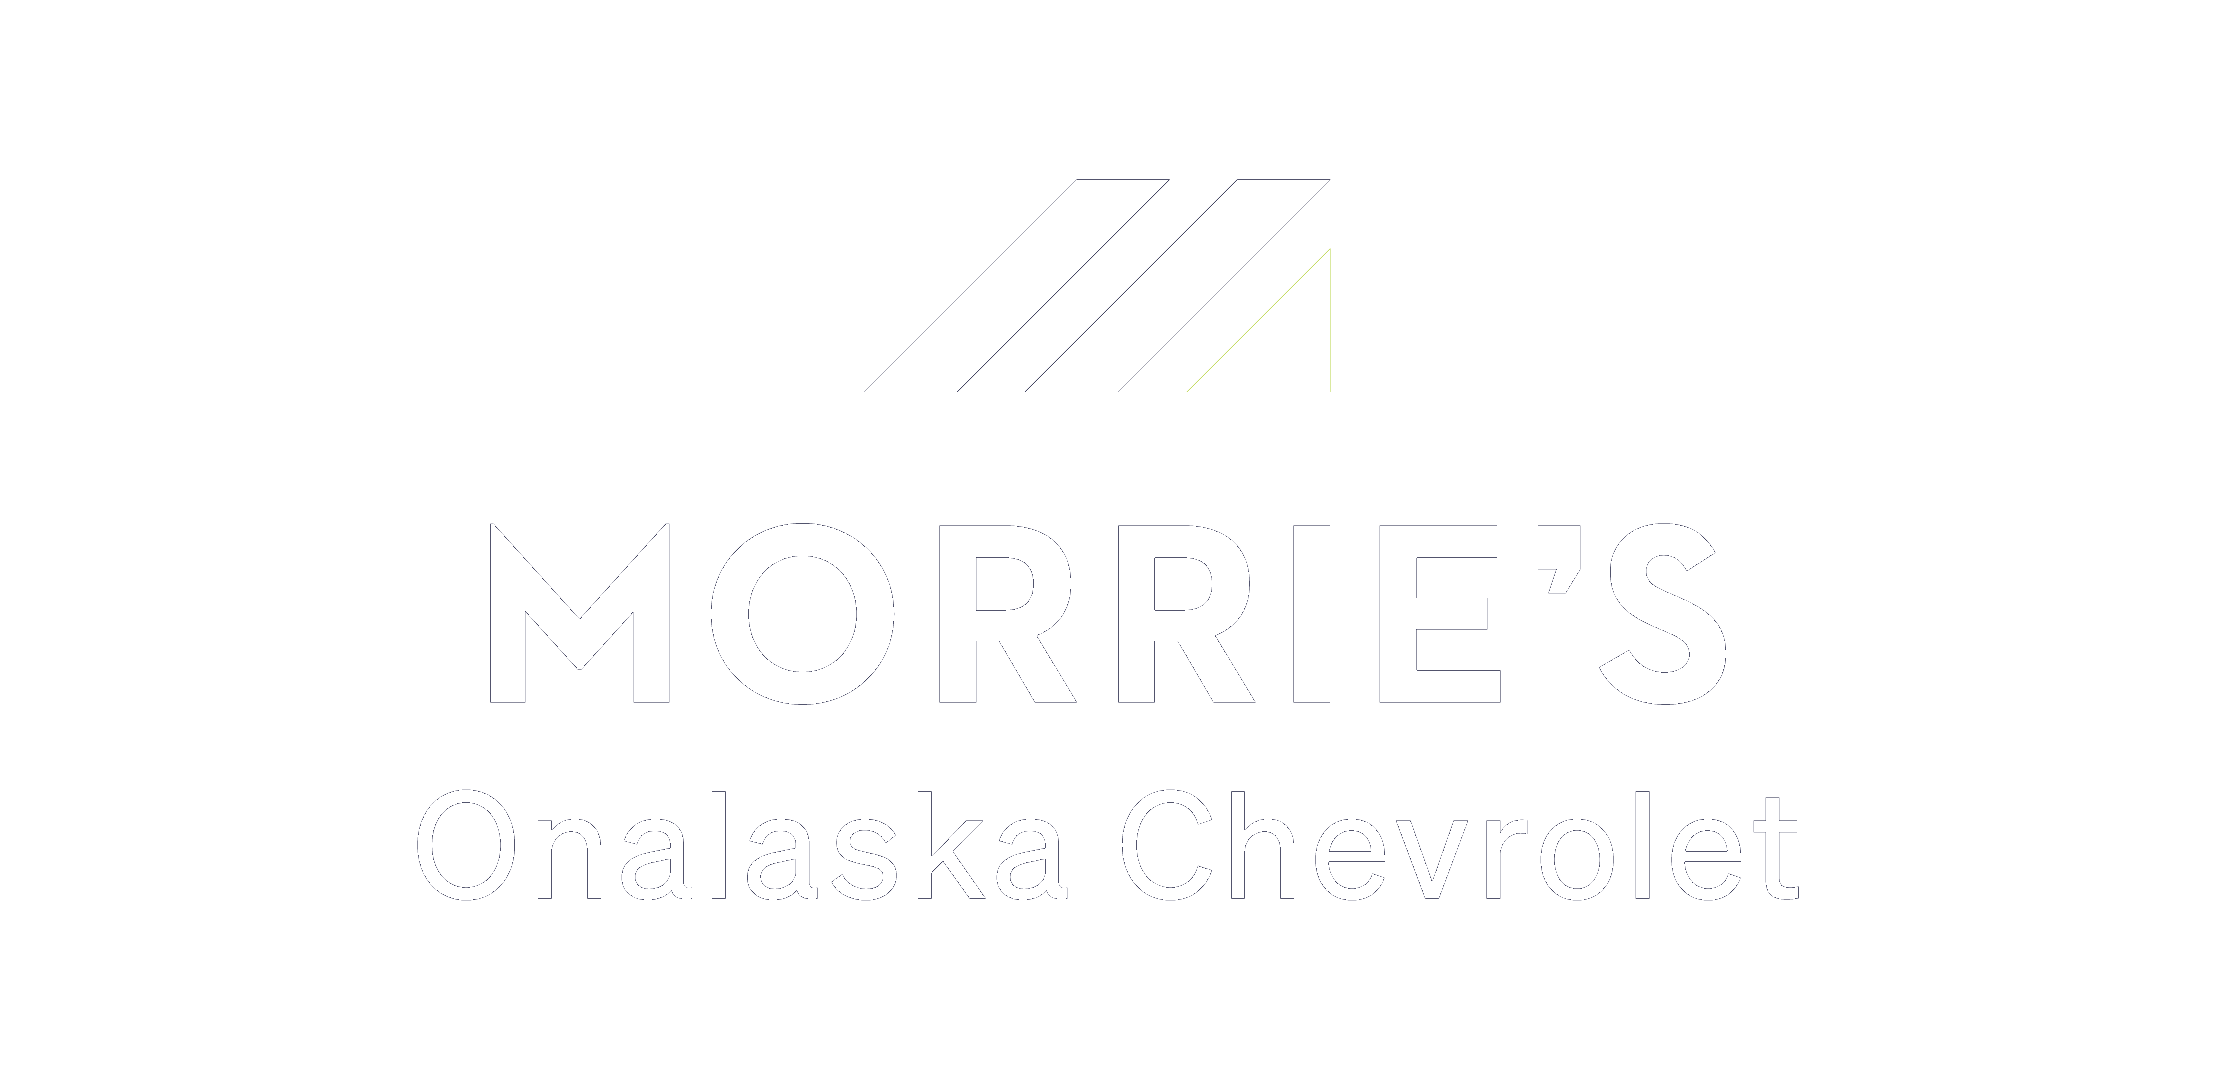 Morries Onalaska Chevrolet